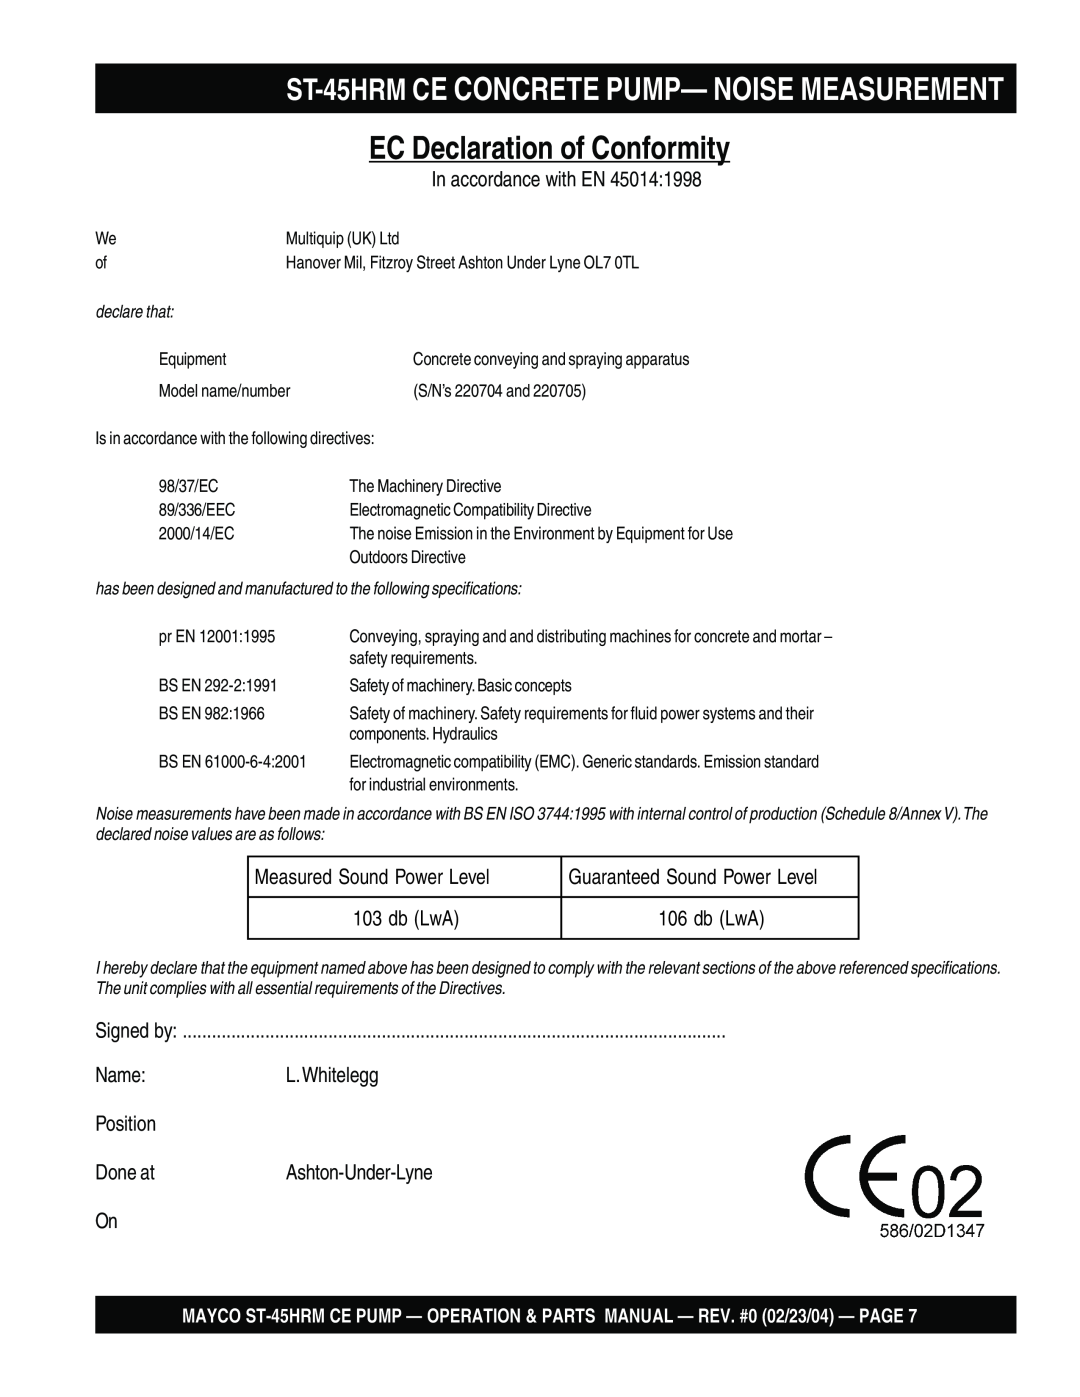 Multiquip ST-45HRM CE manual EC Declaration of Conformity, ST-45HRMCE CONCRETE PUMP— NOISE MEASUREMENT 